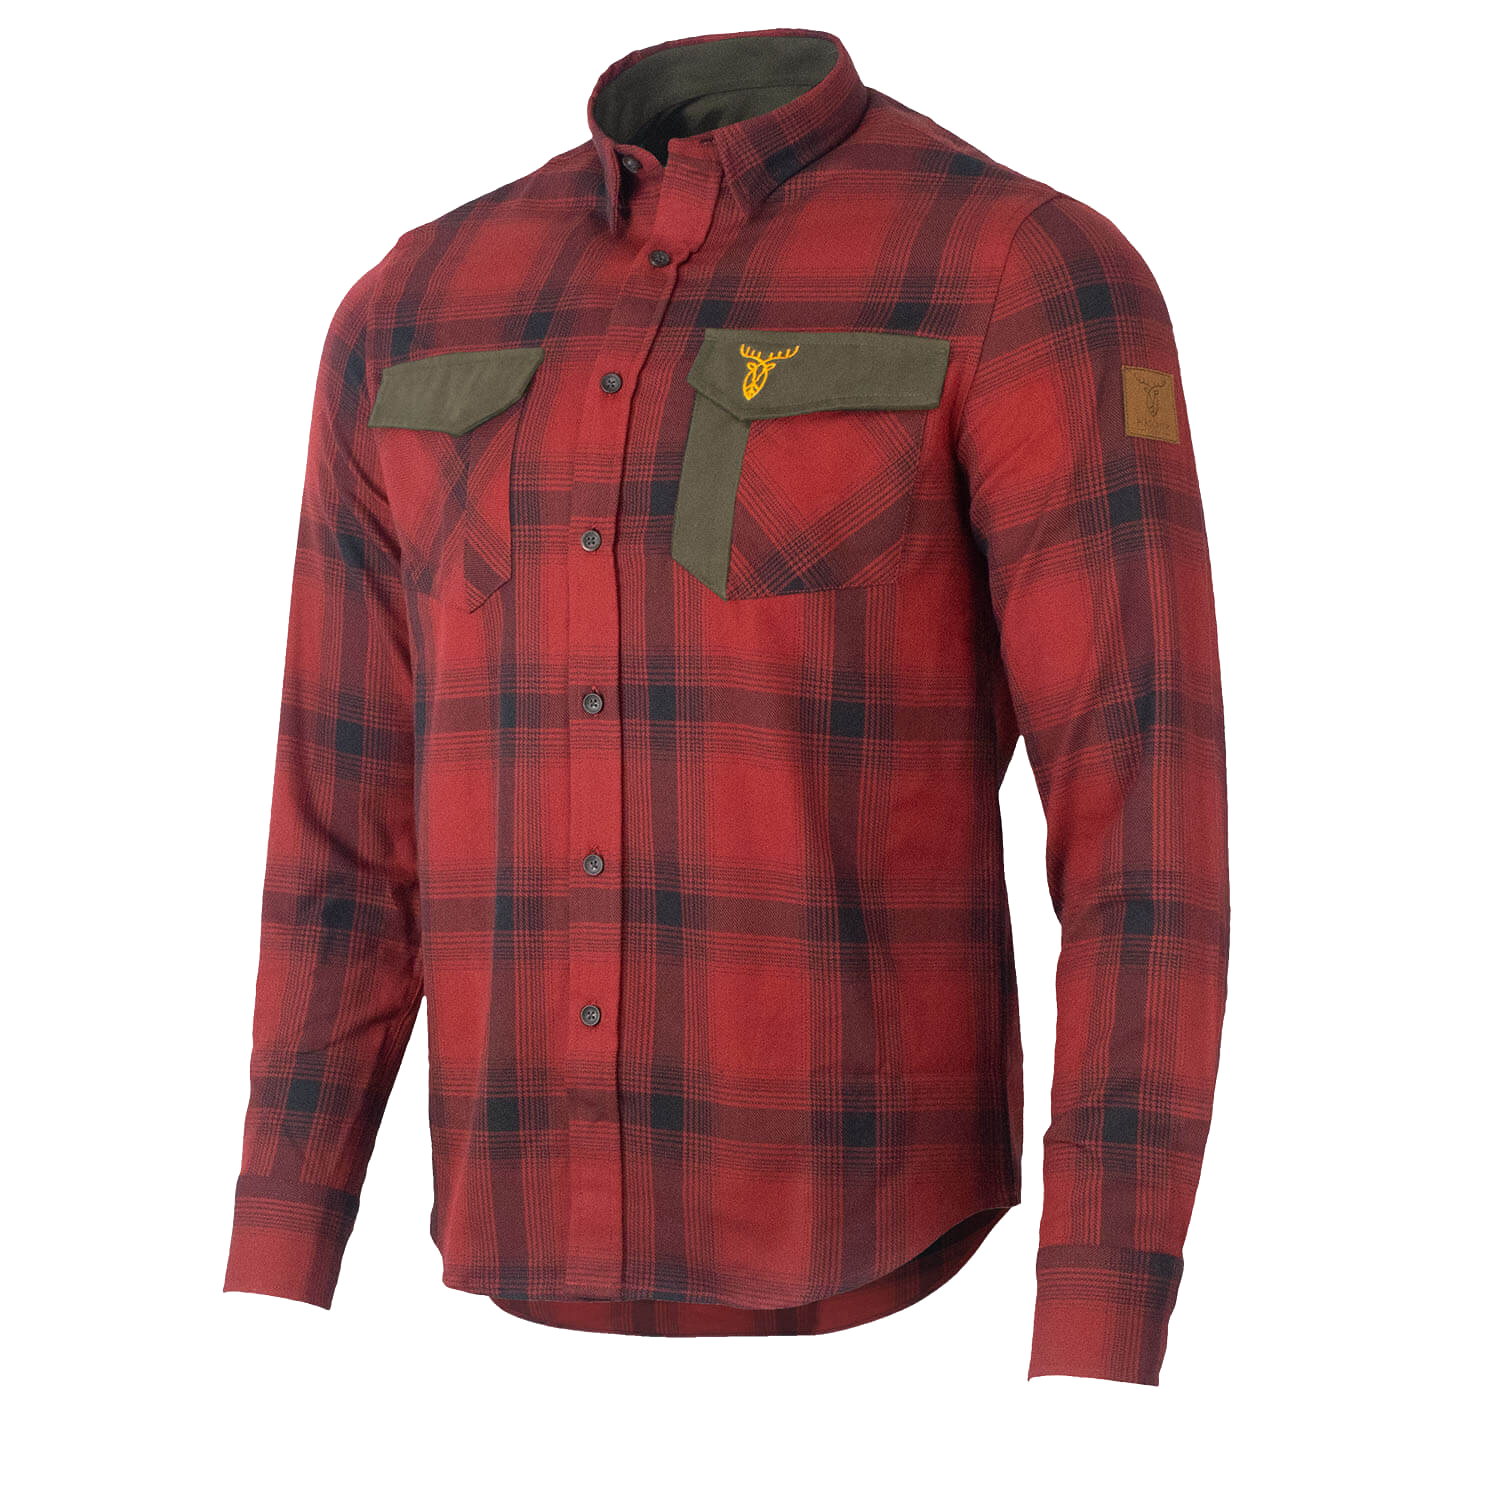 Pirscher Gear Forest Shirt (Fiery Red) - Hunting Shirts